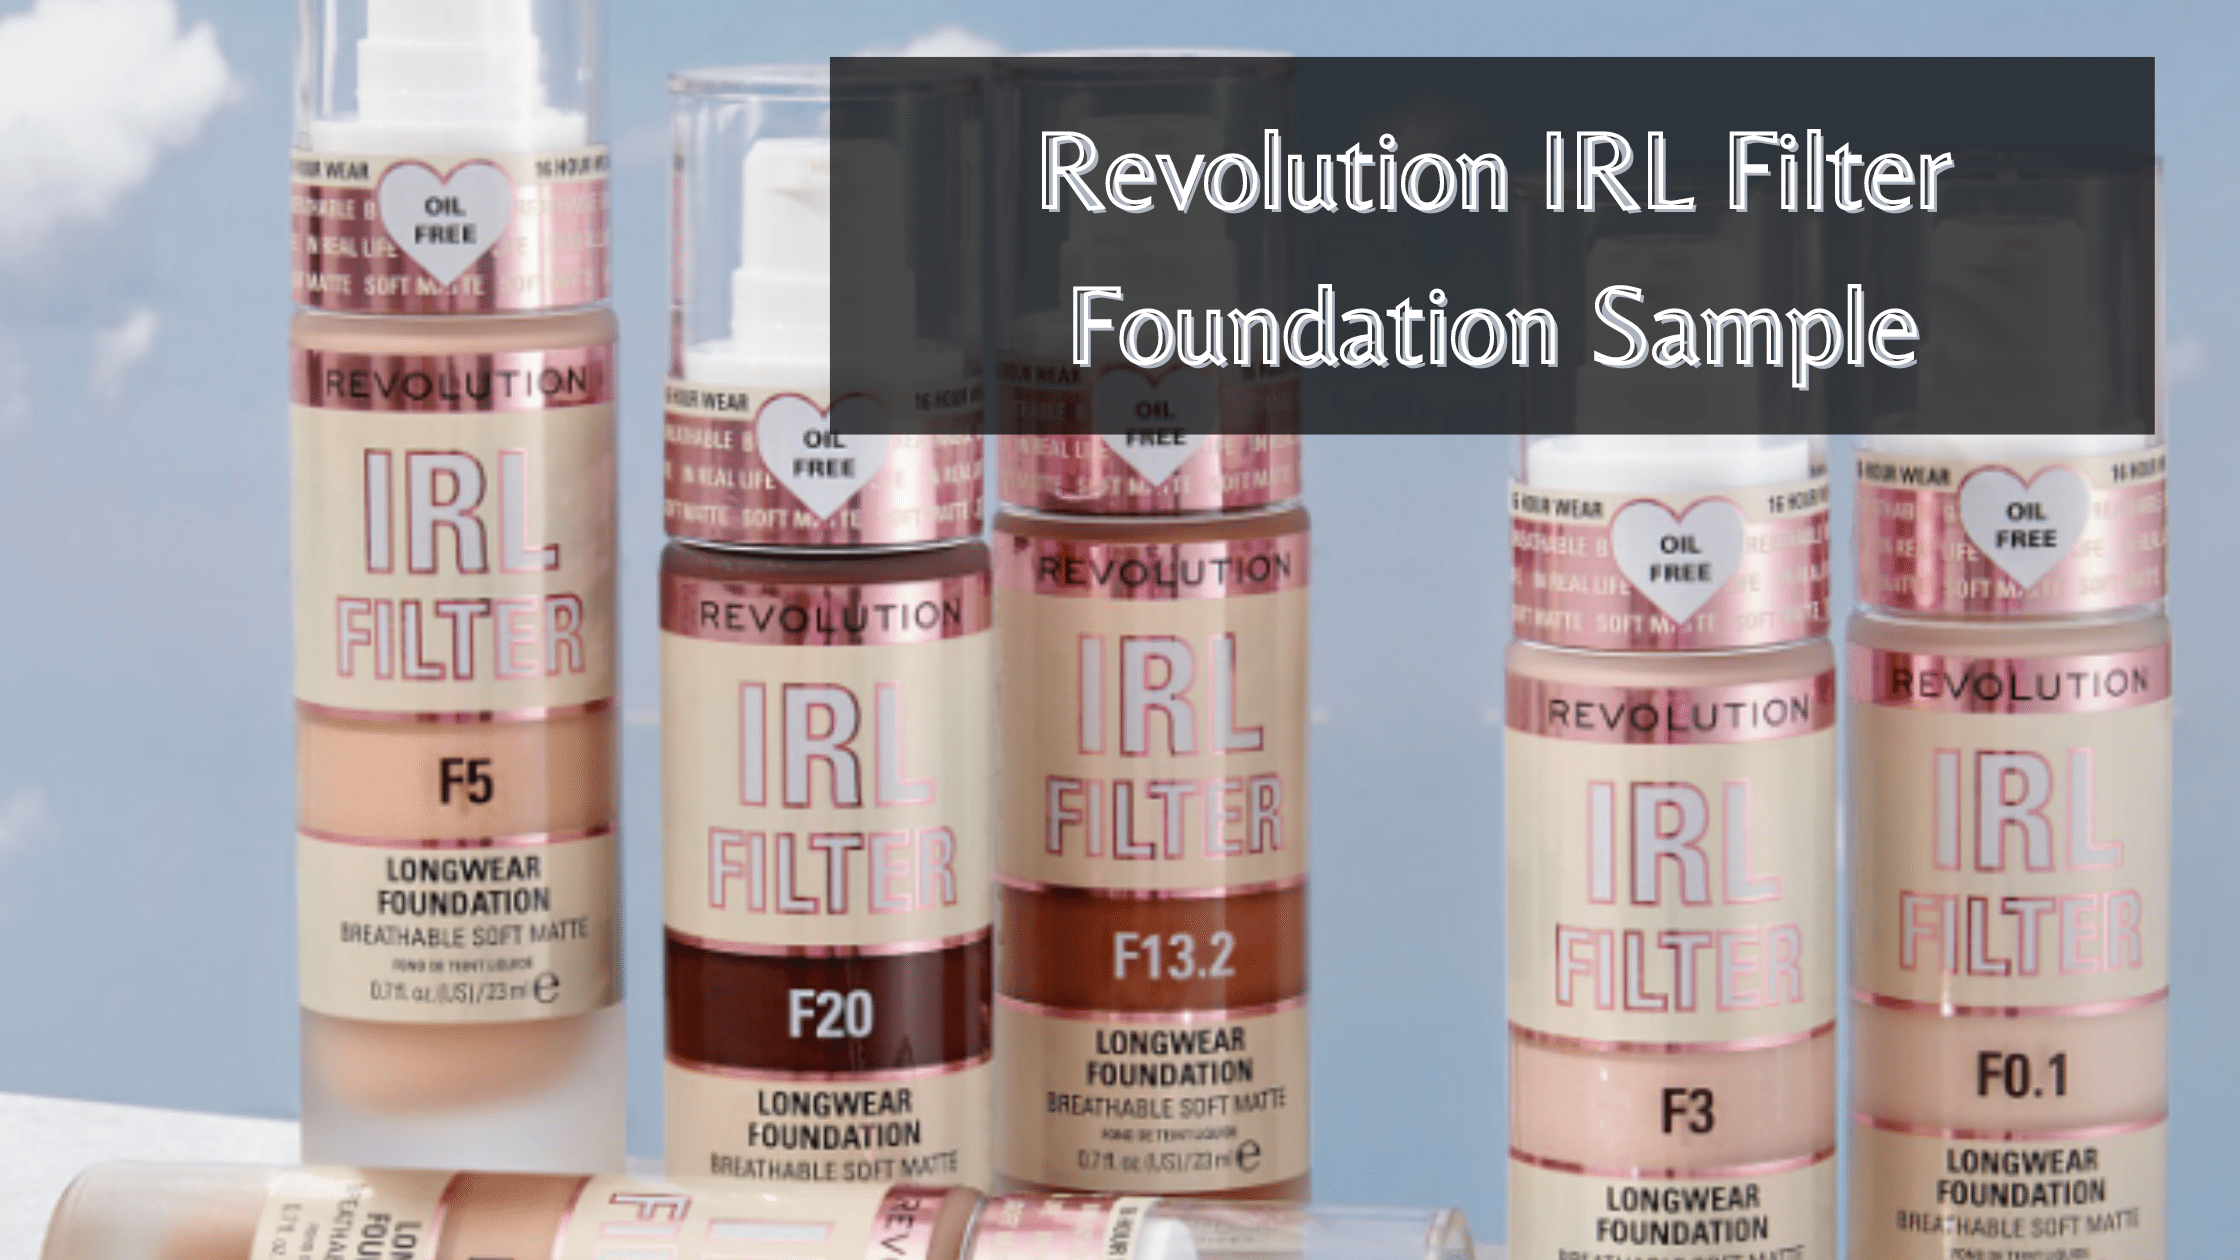 Revolution IRL Filter Foundation Sample